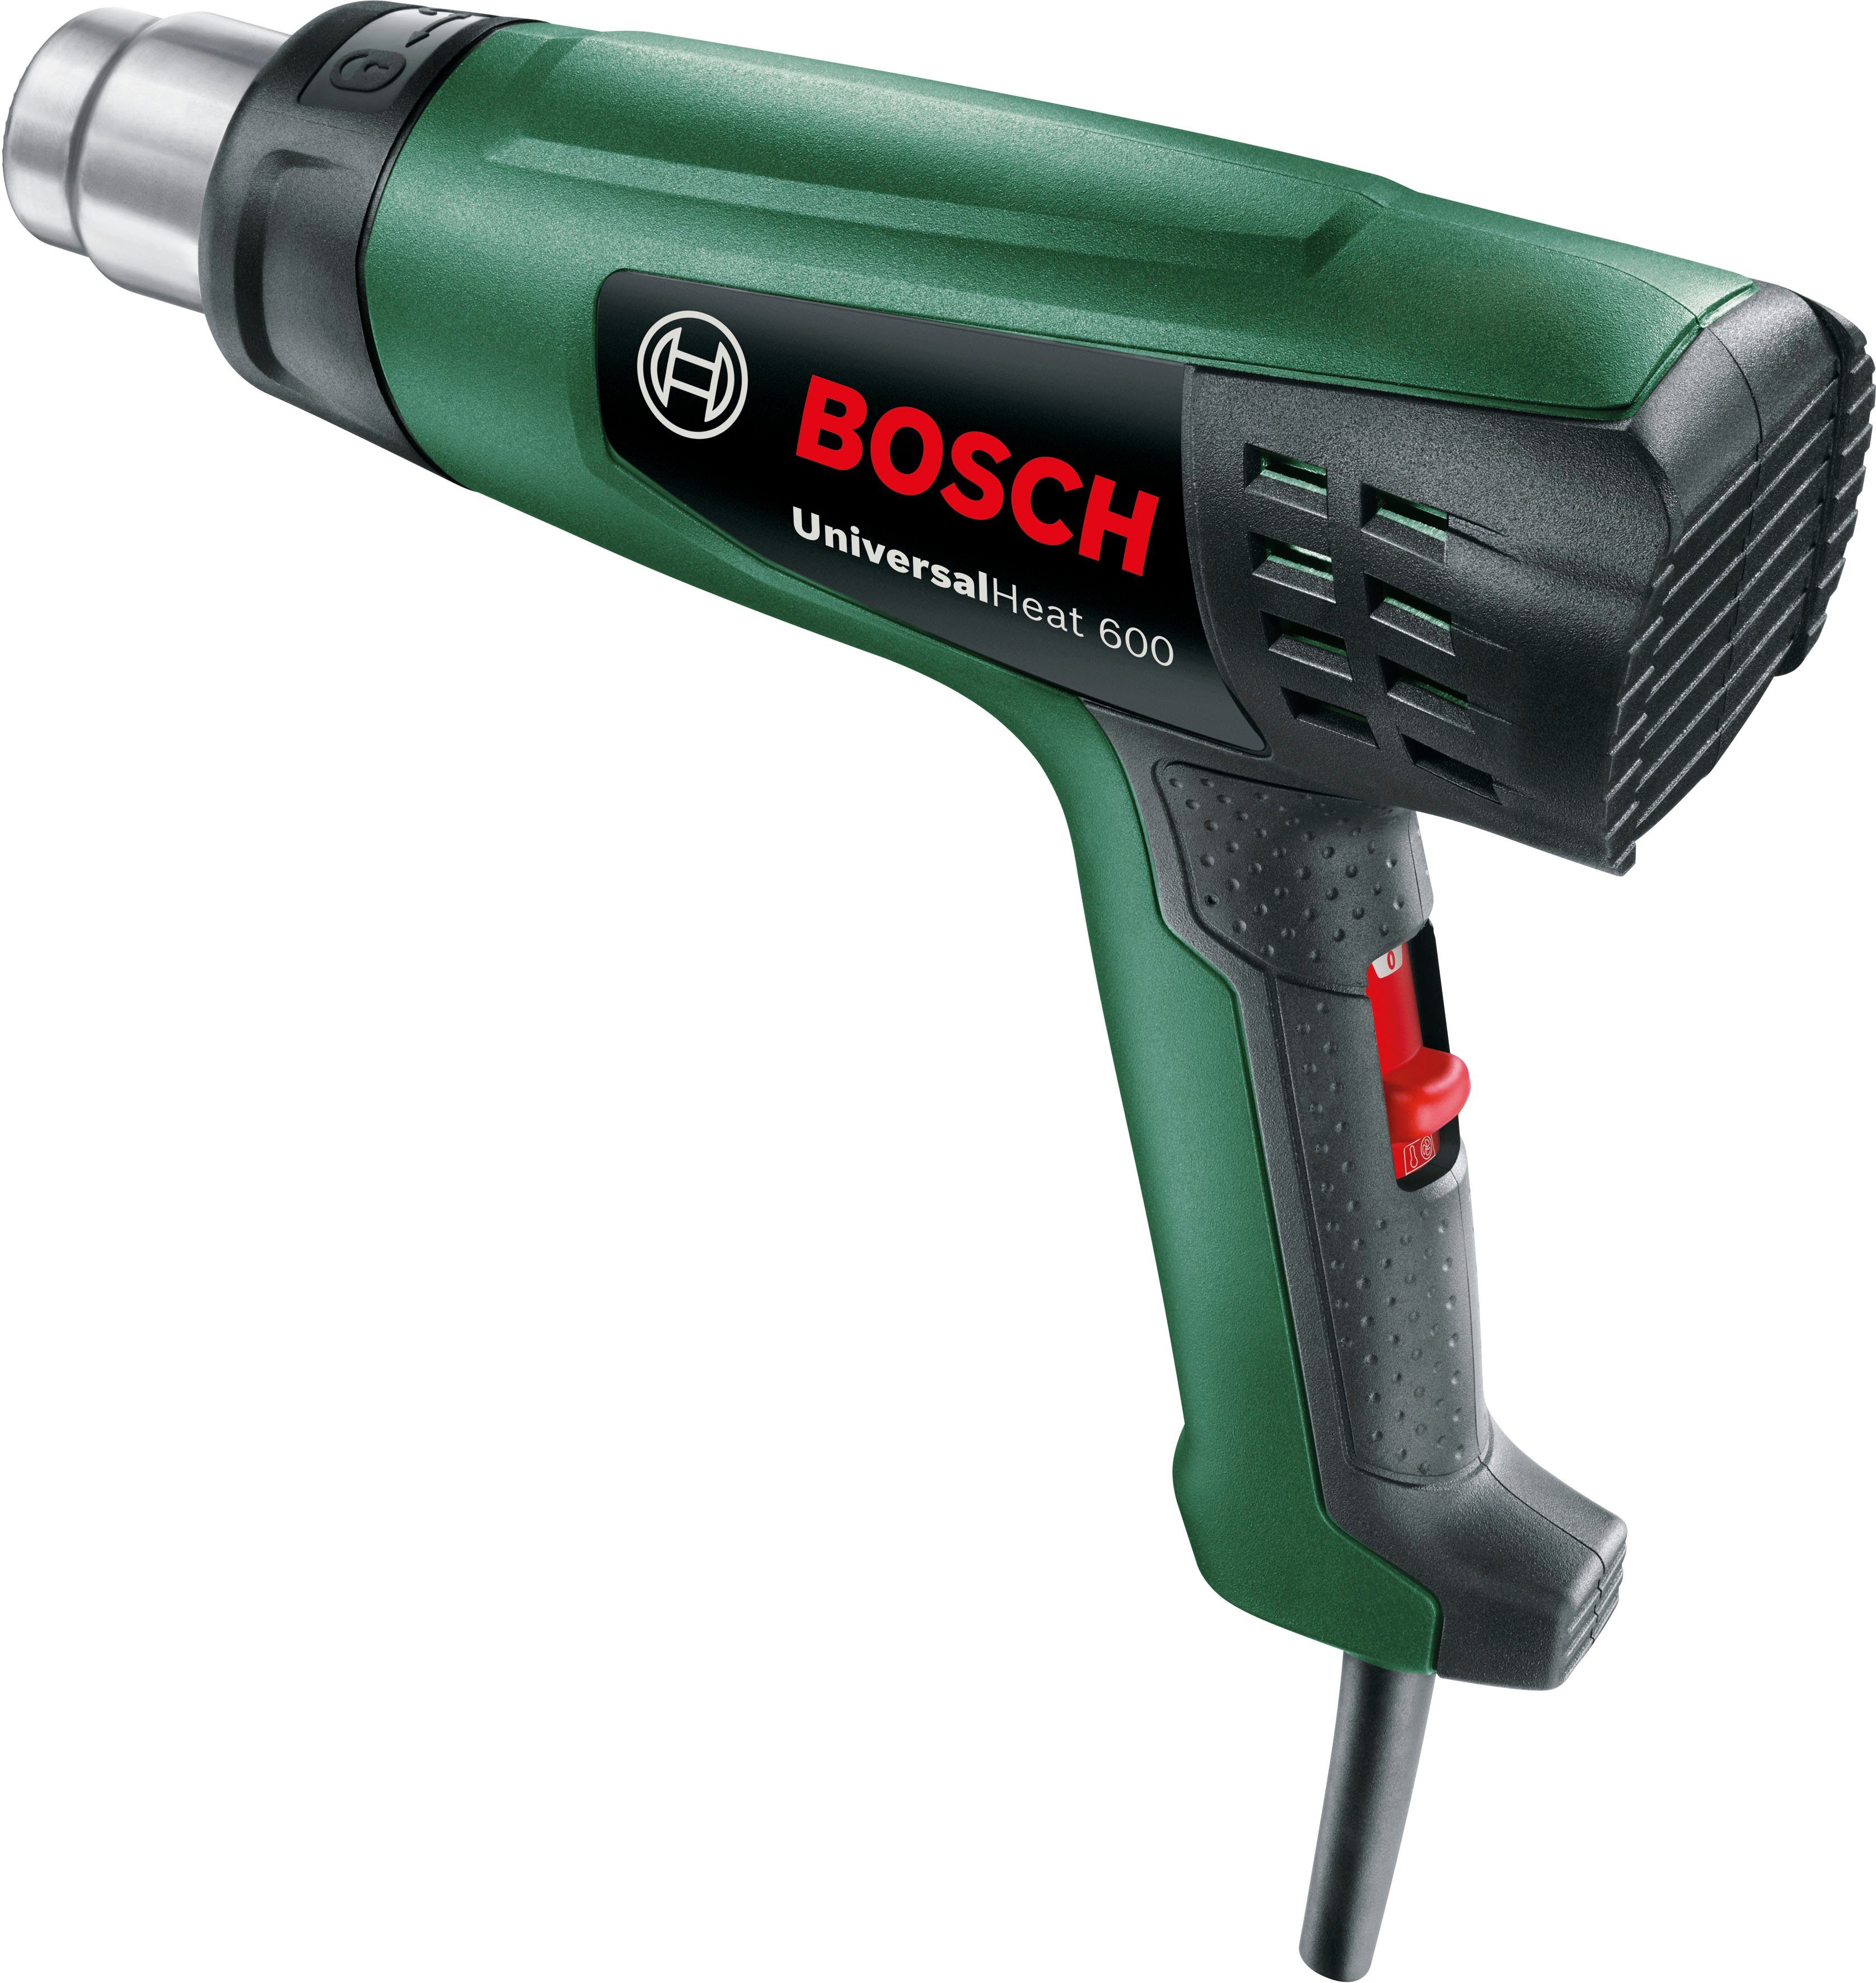 & Garden °C Bosch Heißluftgebläse 600 600, UniversalHeat bis Home max.